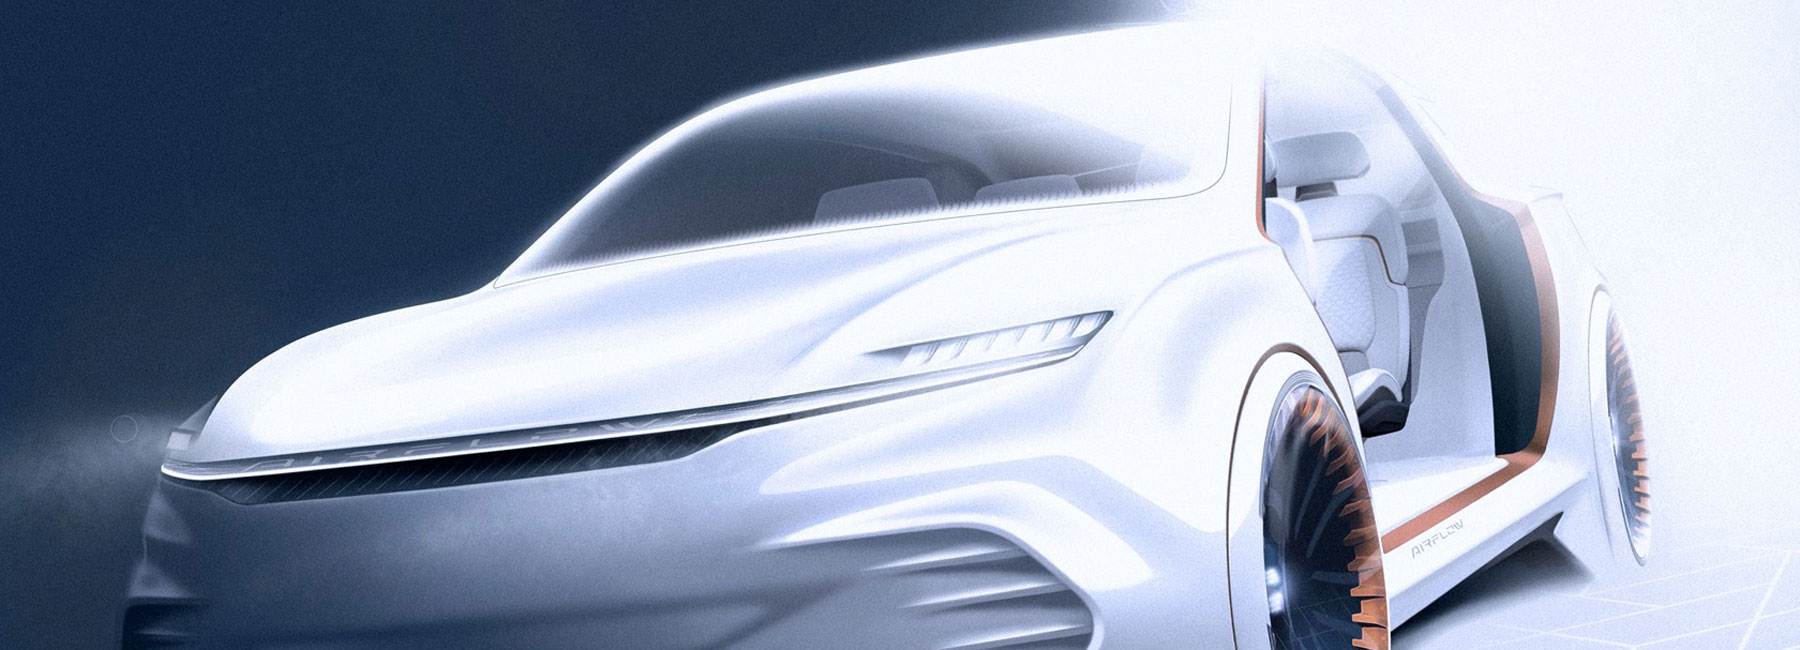 Ces 2020 Fiat Chrysler To Unveil Airflow Vision Concept